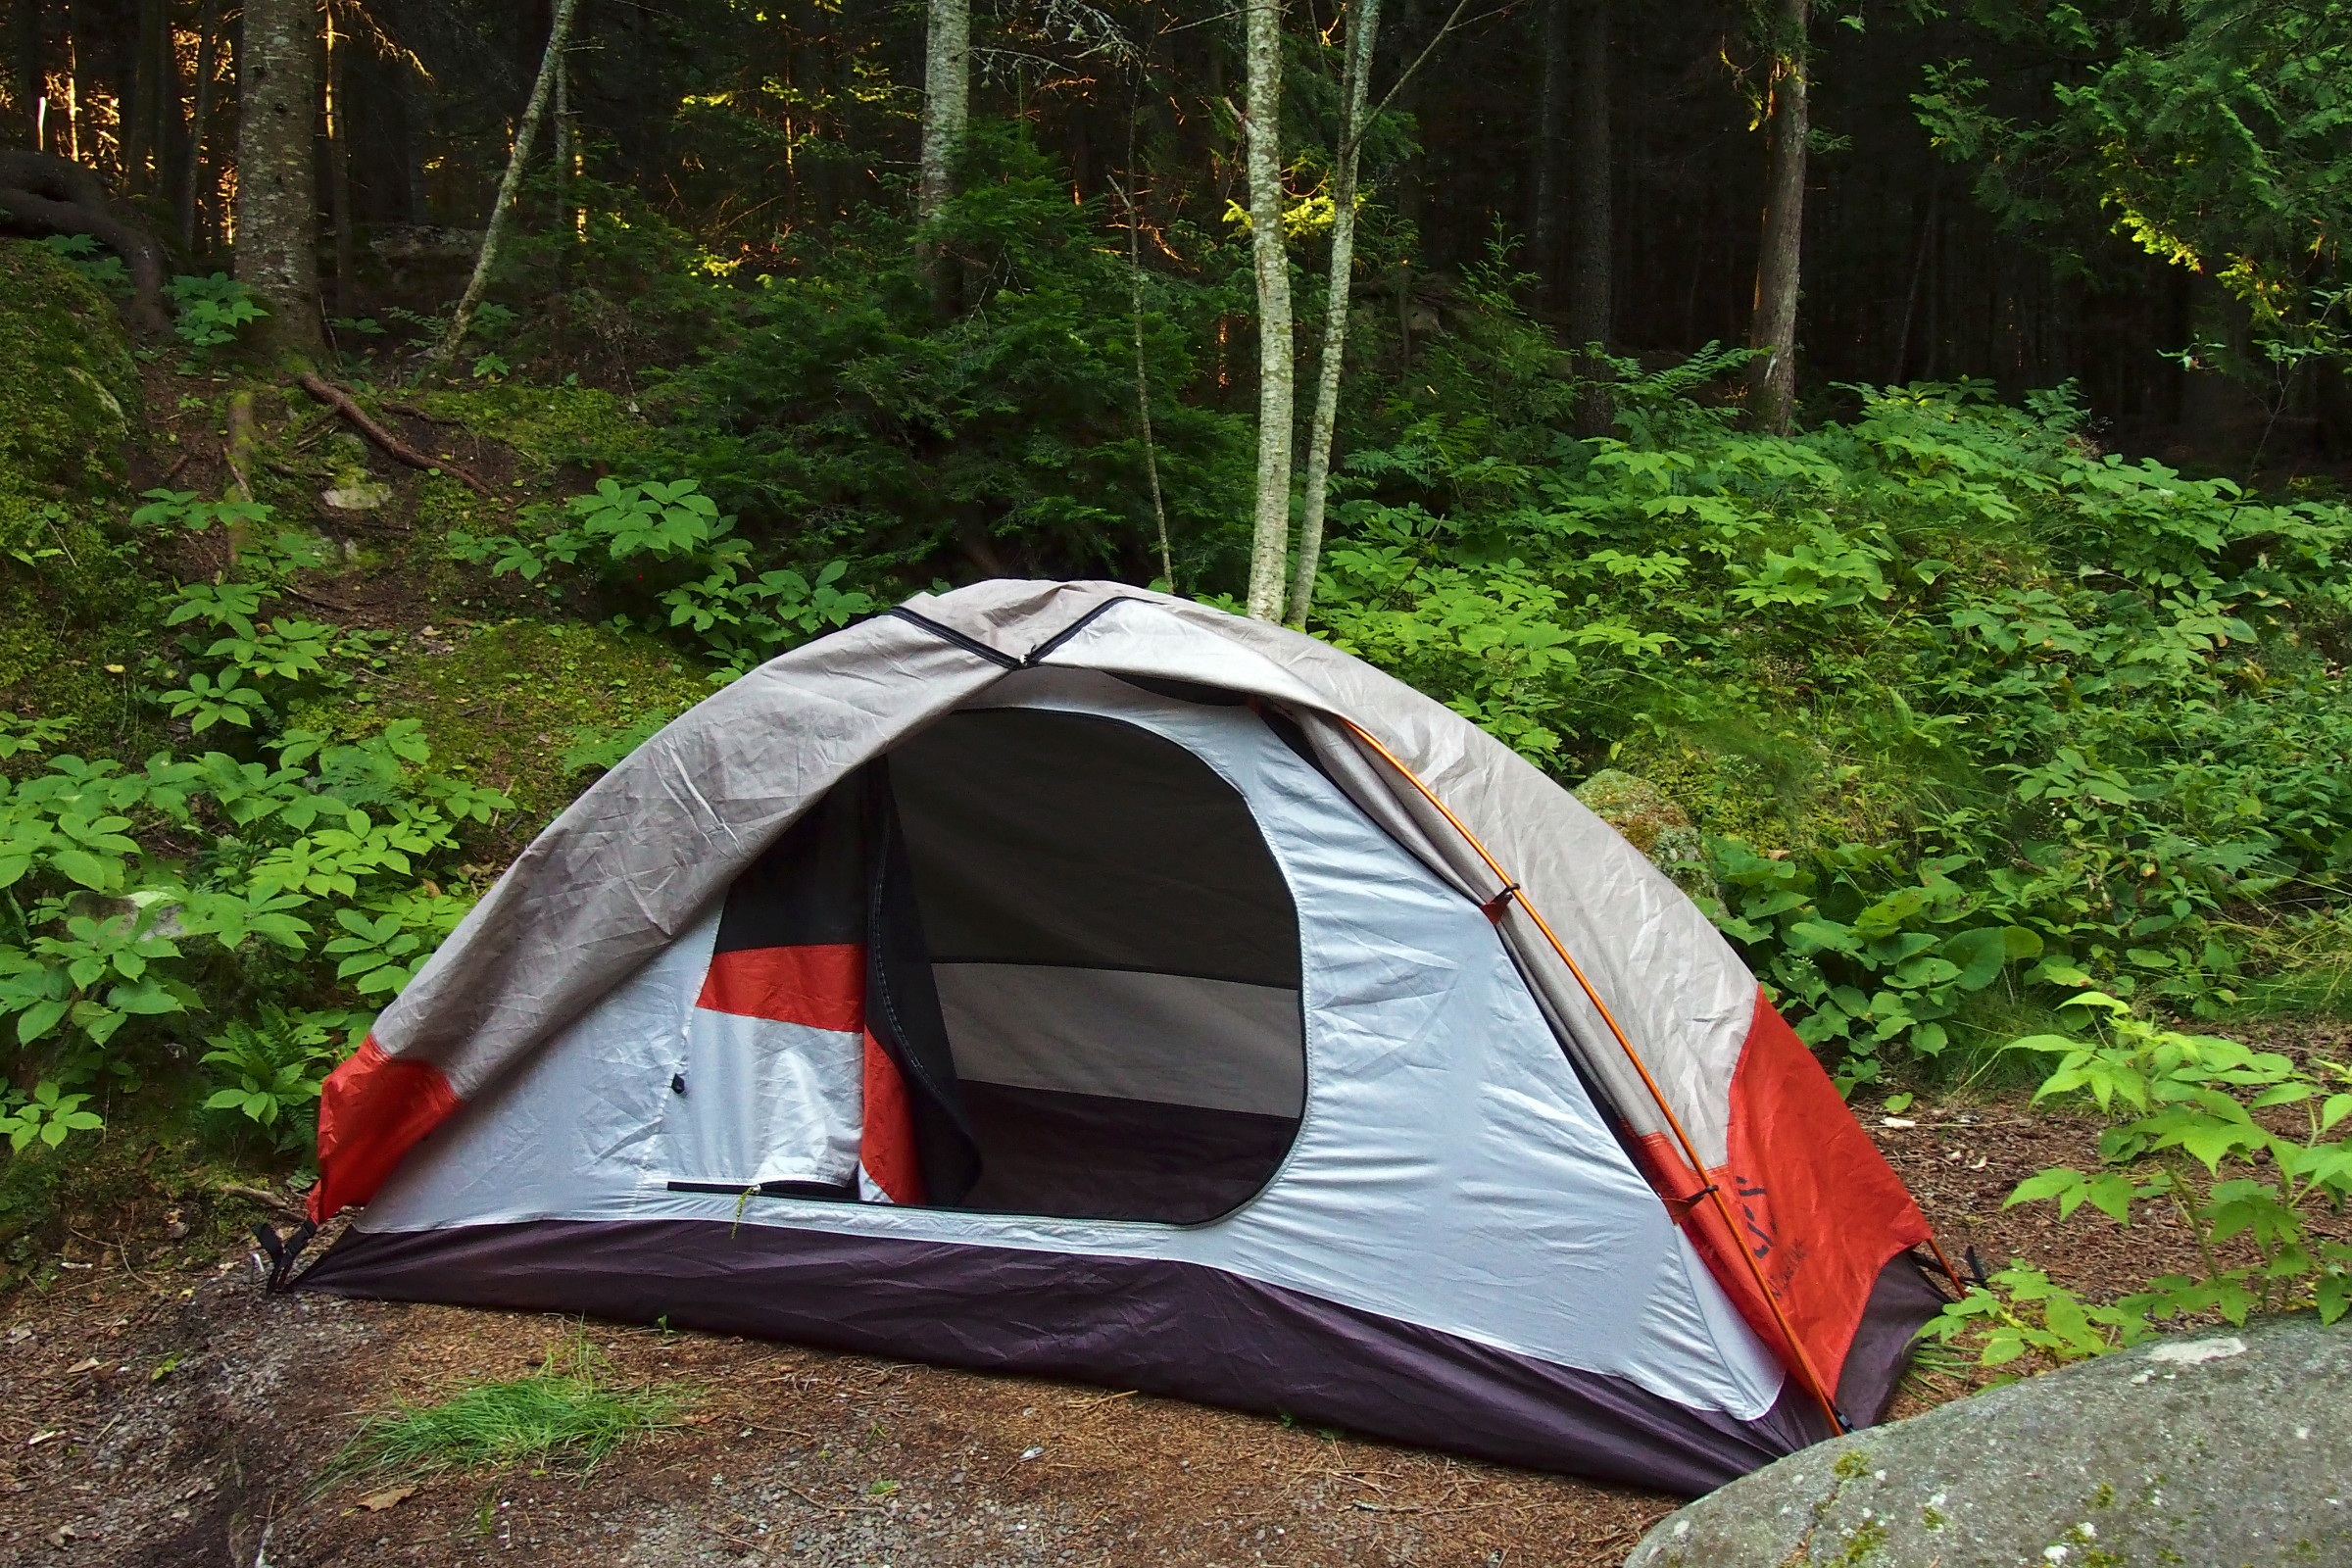 My tent | Photo